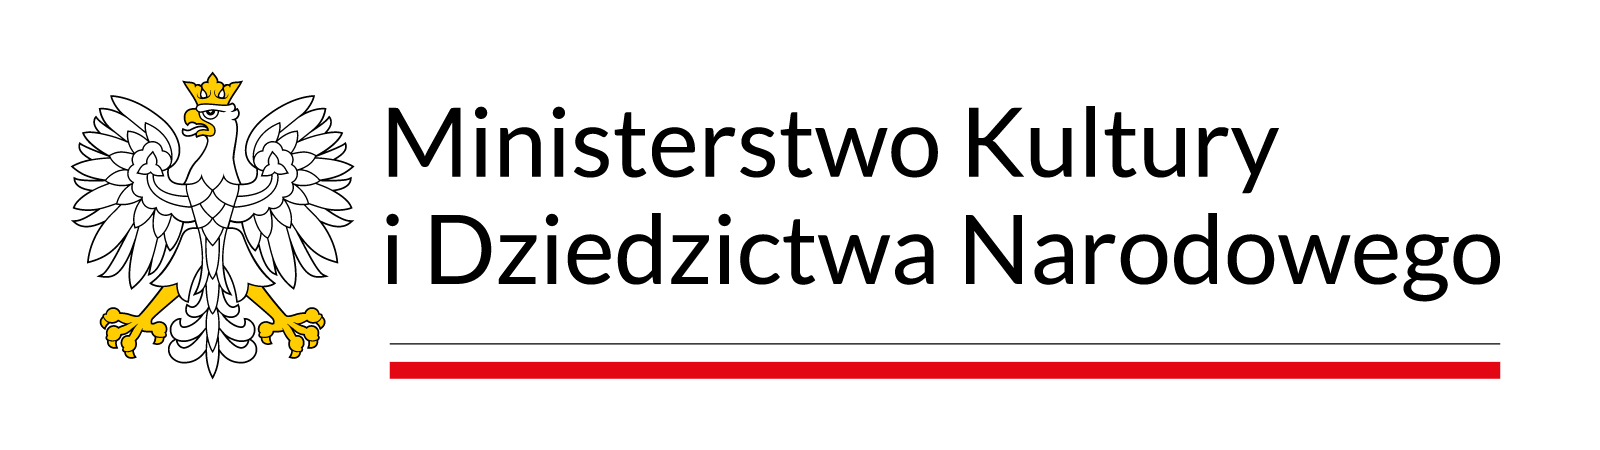 Ministerstwo Kultury i Dziedzictwa Narodowego  logo